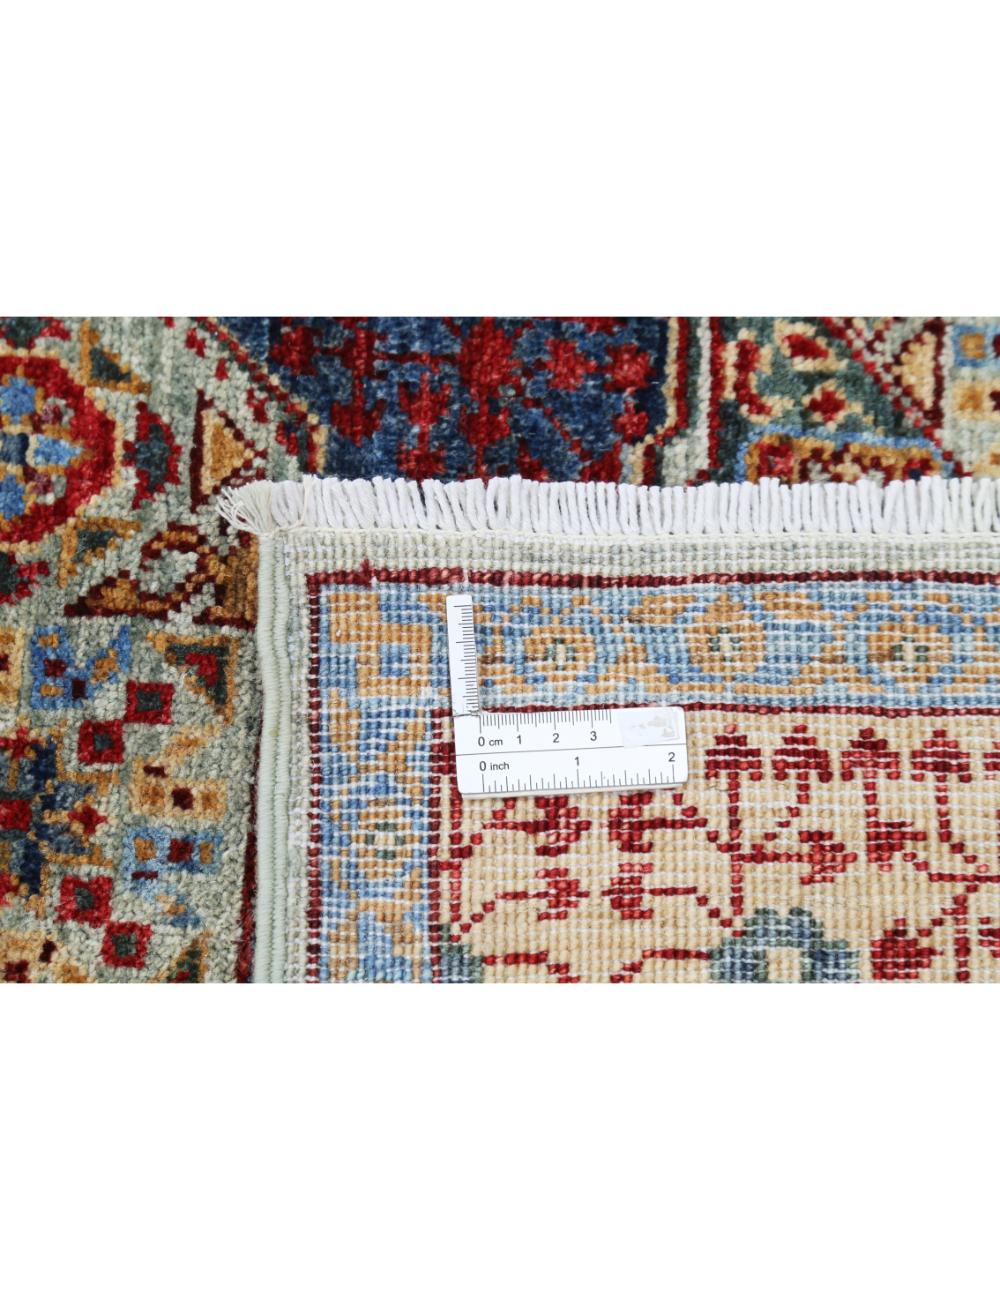 Mamluk 8' 1" X 10' 0" Hand-Knotted Wool Rug 8' 1" X 10' 0" (246 X 305) / Green / Beige